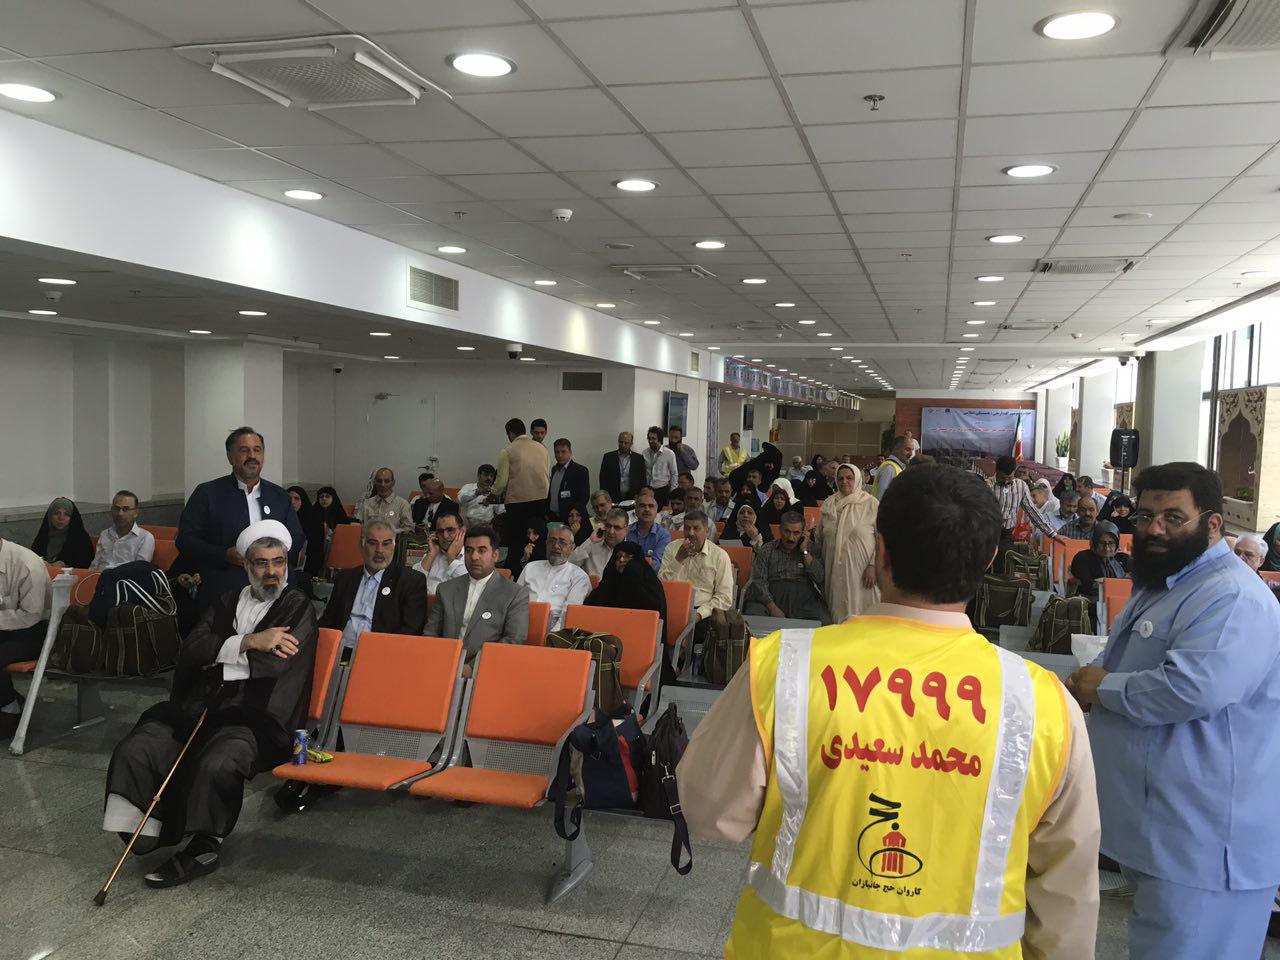 اتمام مراحل نهائی راه اندازی سالن حج شهر فرودگاهی امام خمینی (ره) در دو هفته